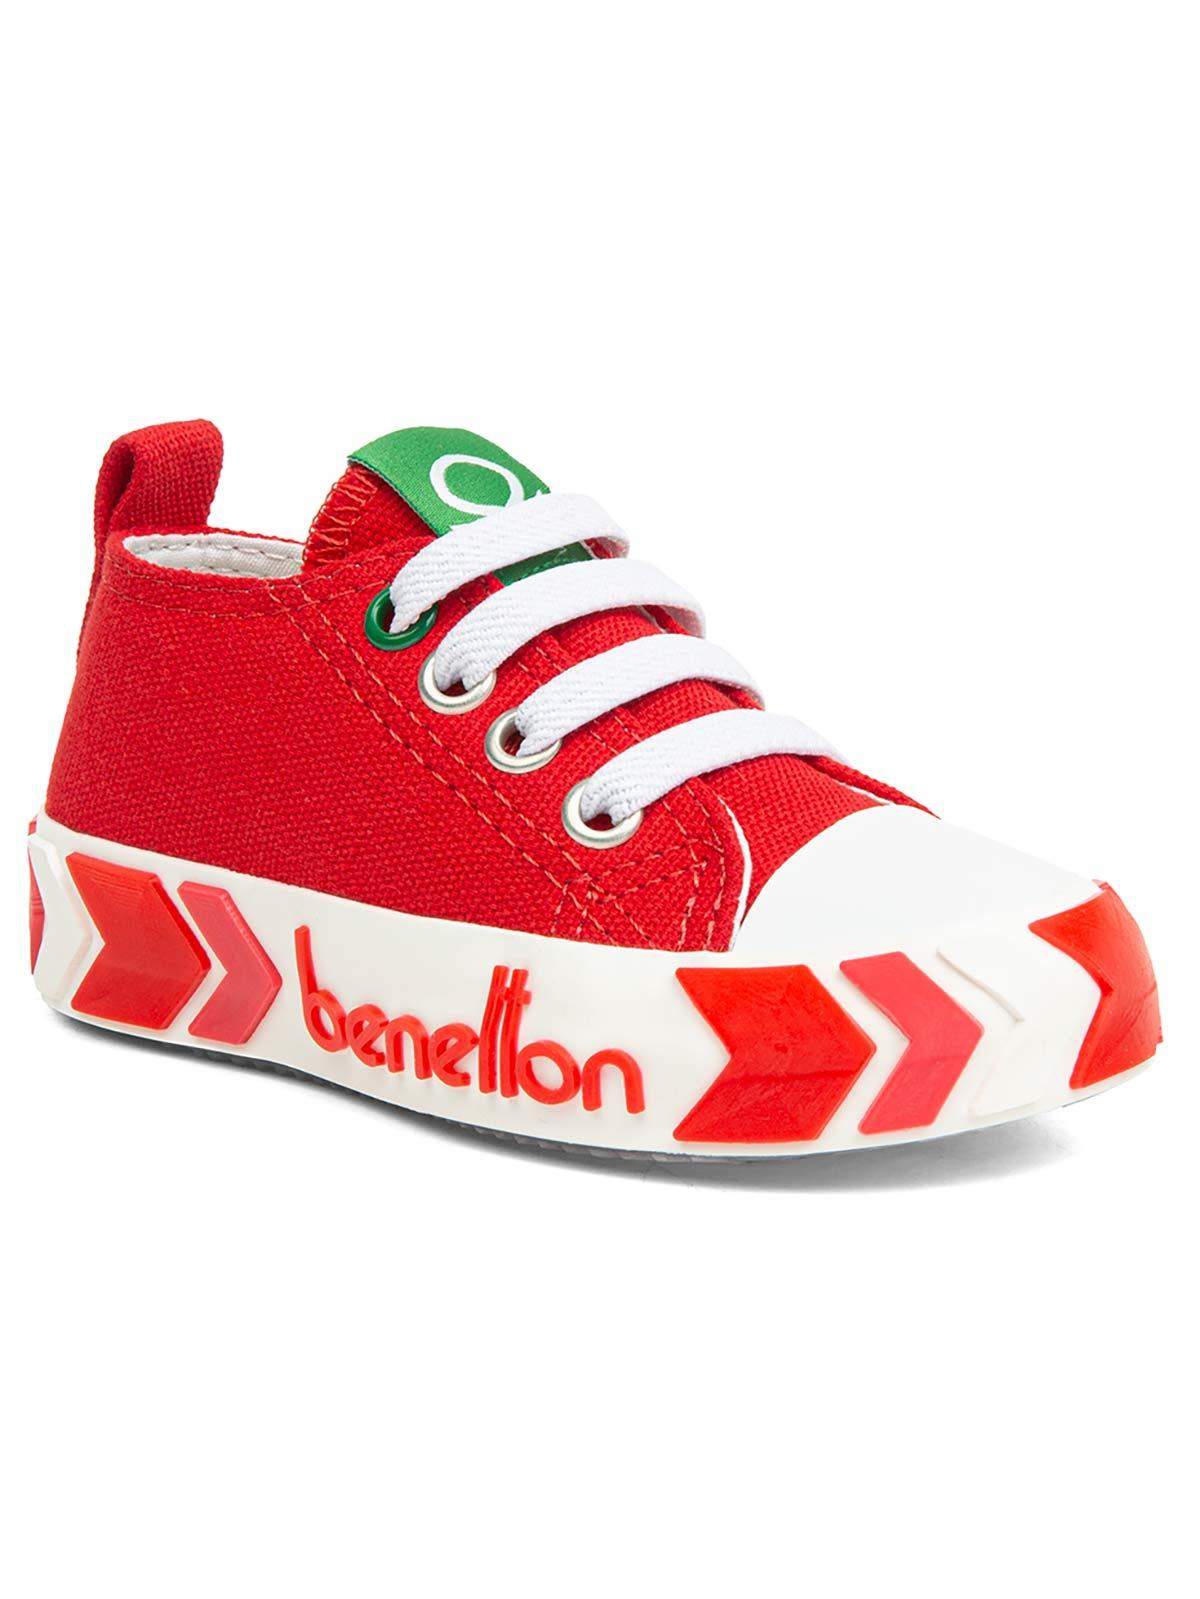 Benetton Erkek Çocuk Spor Ayakkabı 21-25 Numara Kırmızı